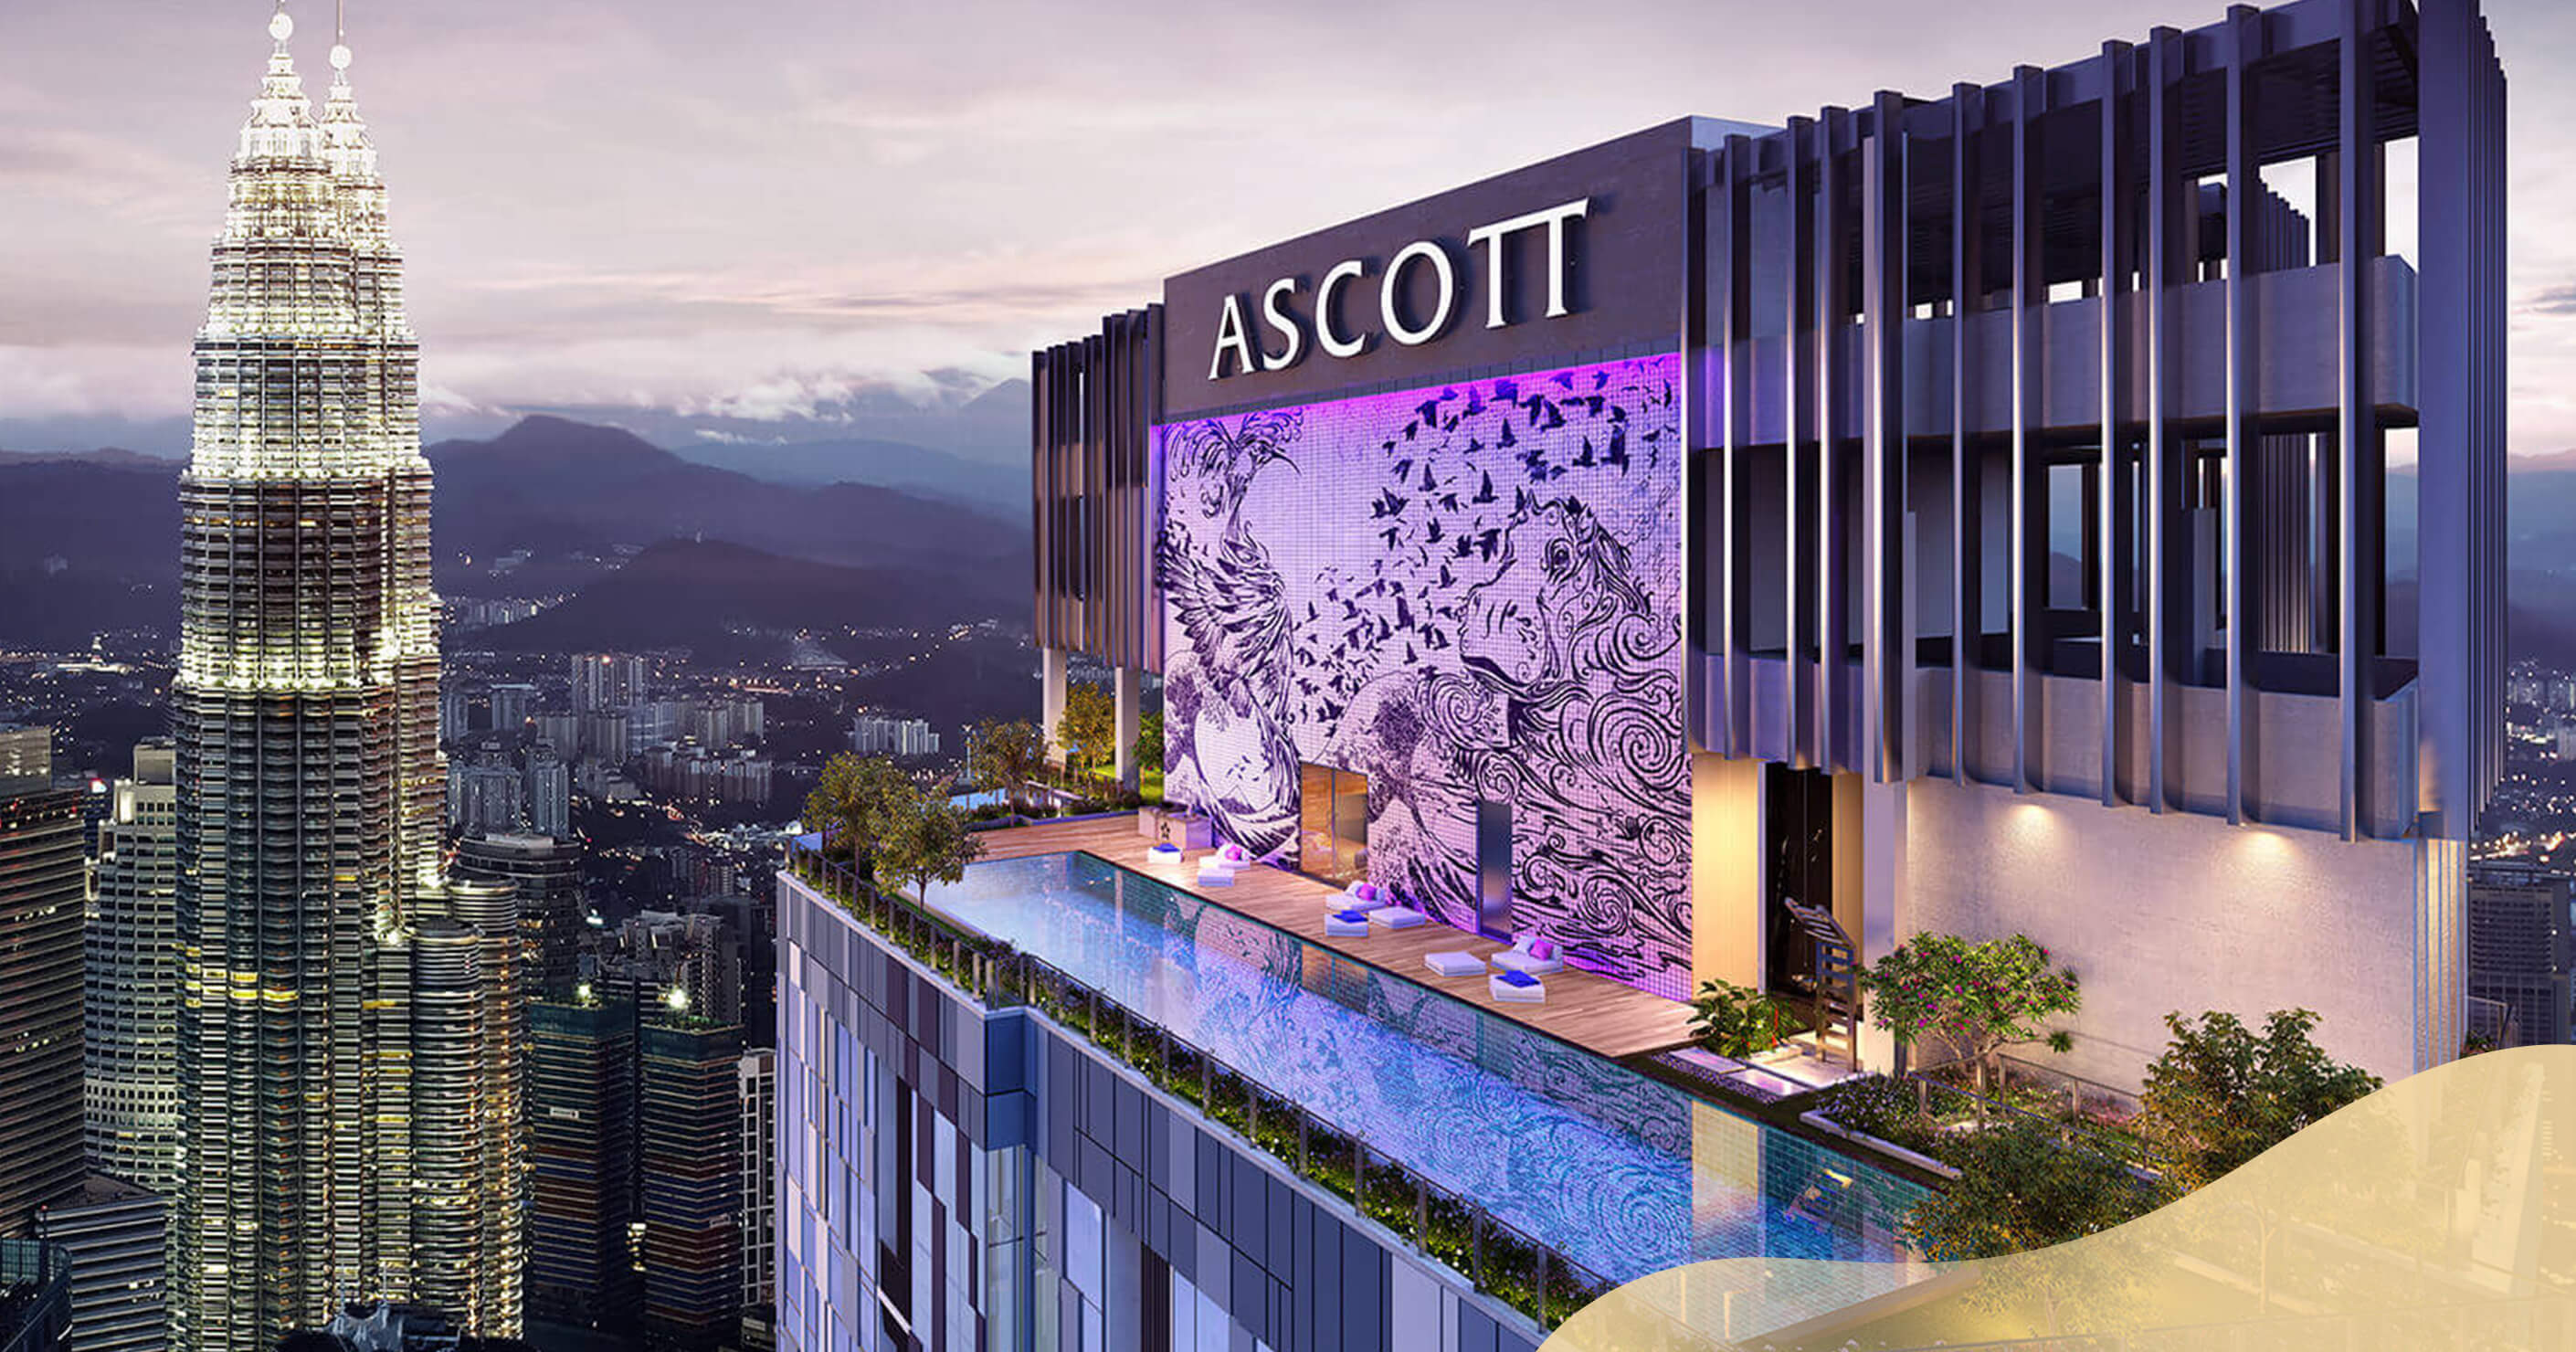 The Ascott, Kuala Lumpur